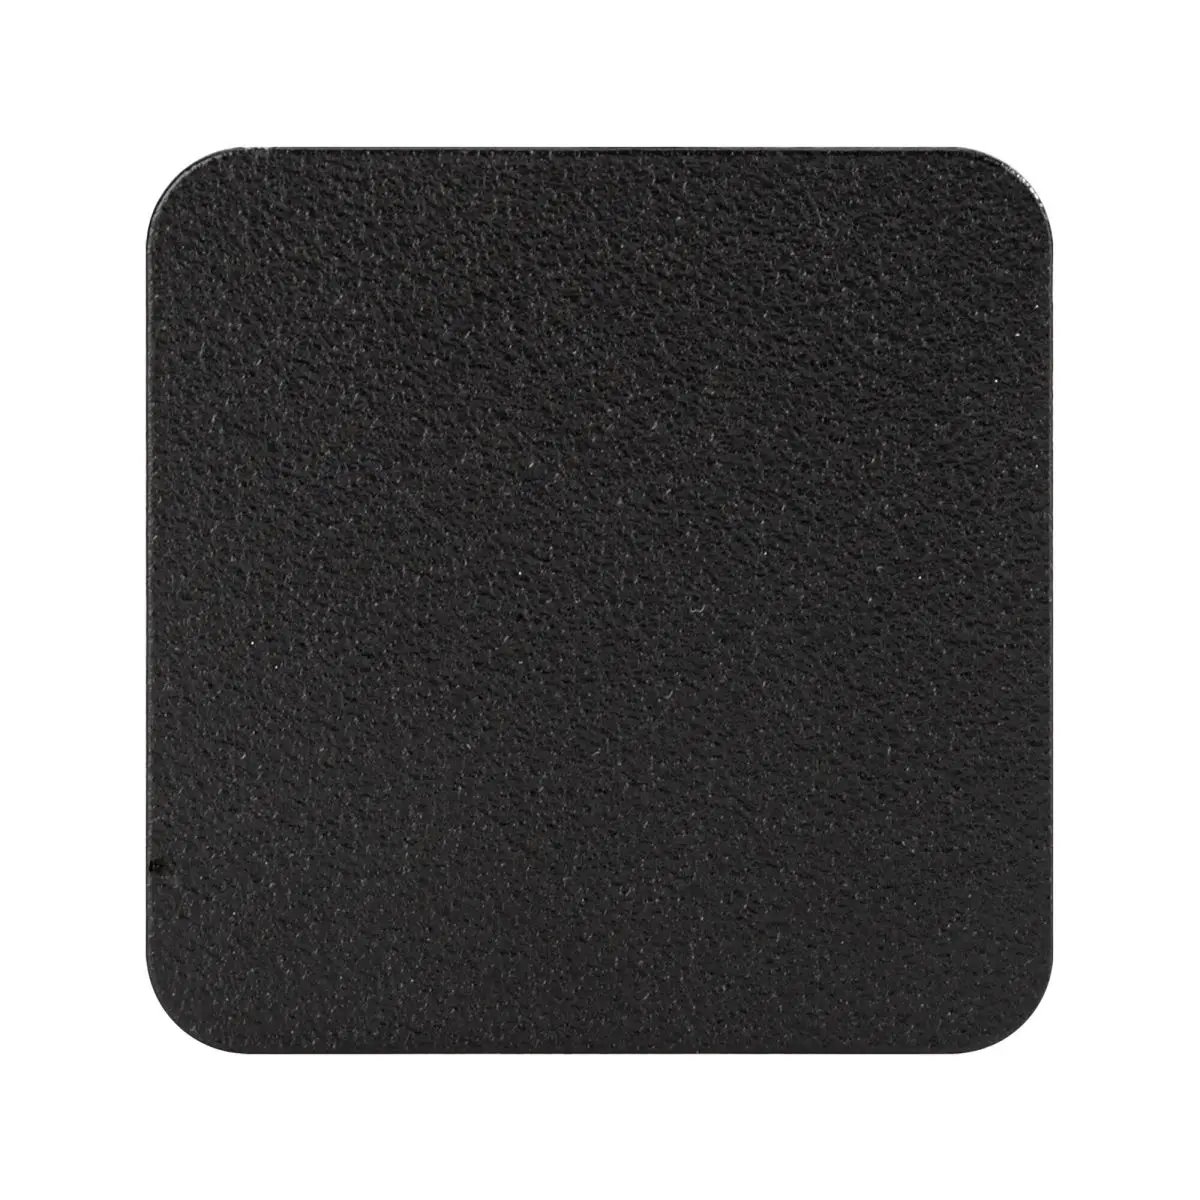 Magnetboard flexiMAGS - 4,5 x 4,5 cm, schwarz